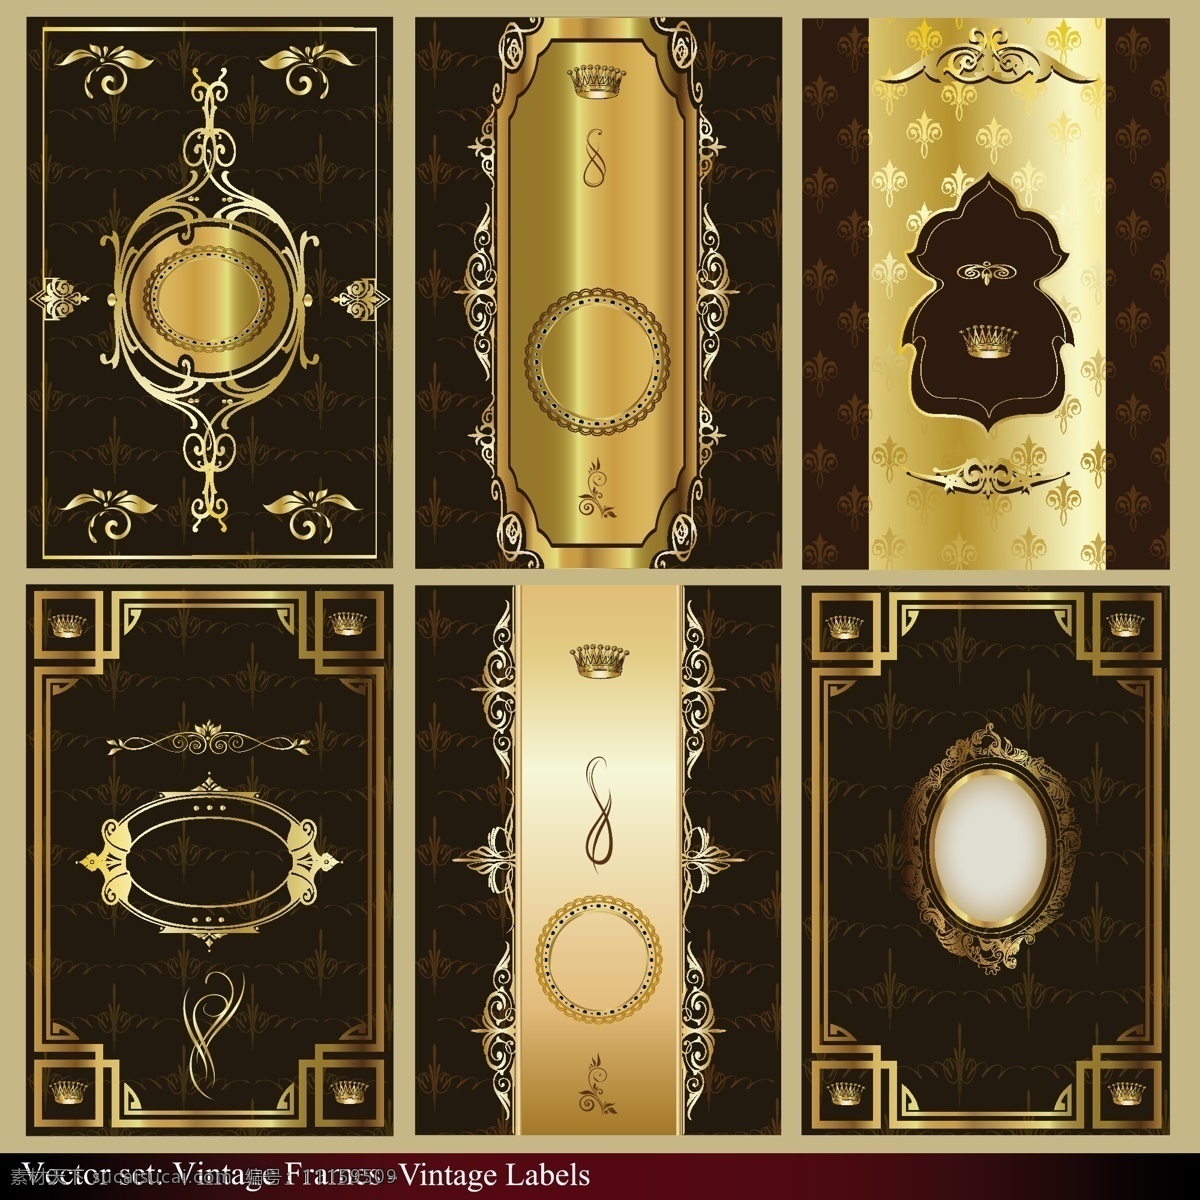 高贵 黄金 边框 装饰 宝石 古典 华丽 皇冠 皇家 镜框 矢量素材 矢量图 花纹花边